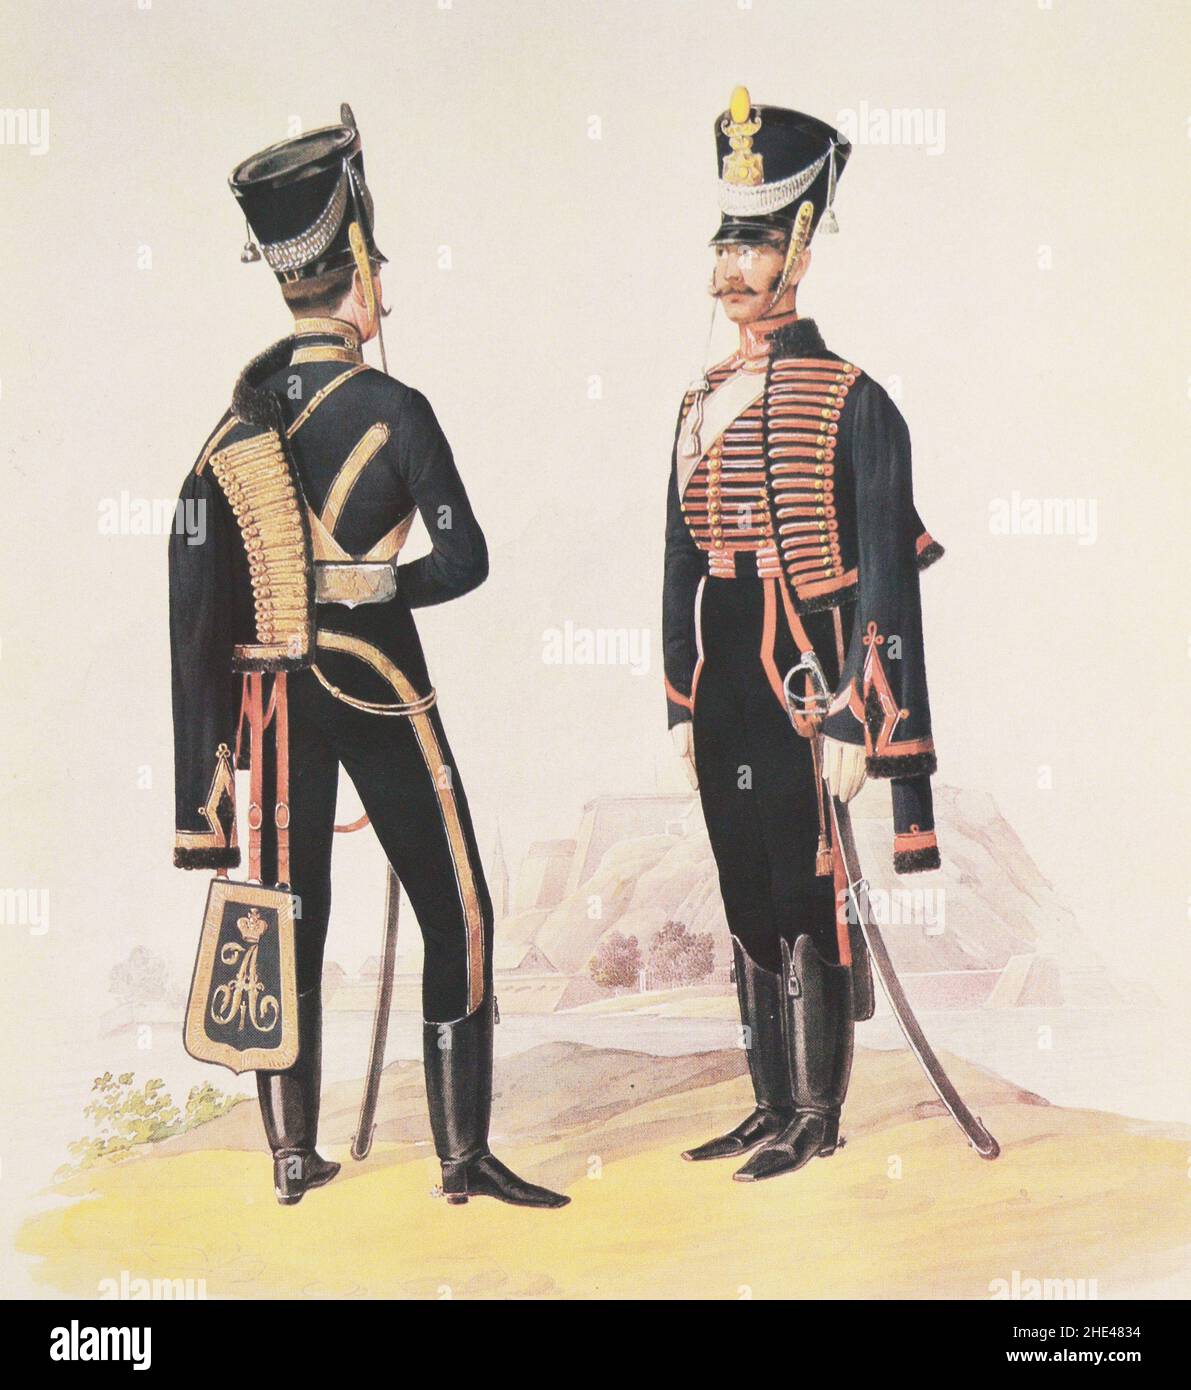 Offizier und Privatmann des Husarenregiments des Russischen Reiches Eljavetgrad im Jahr 1825. Stockfoto